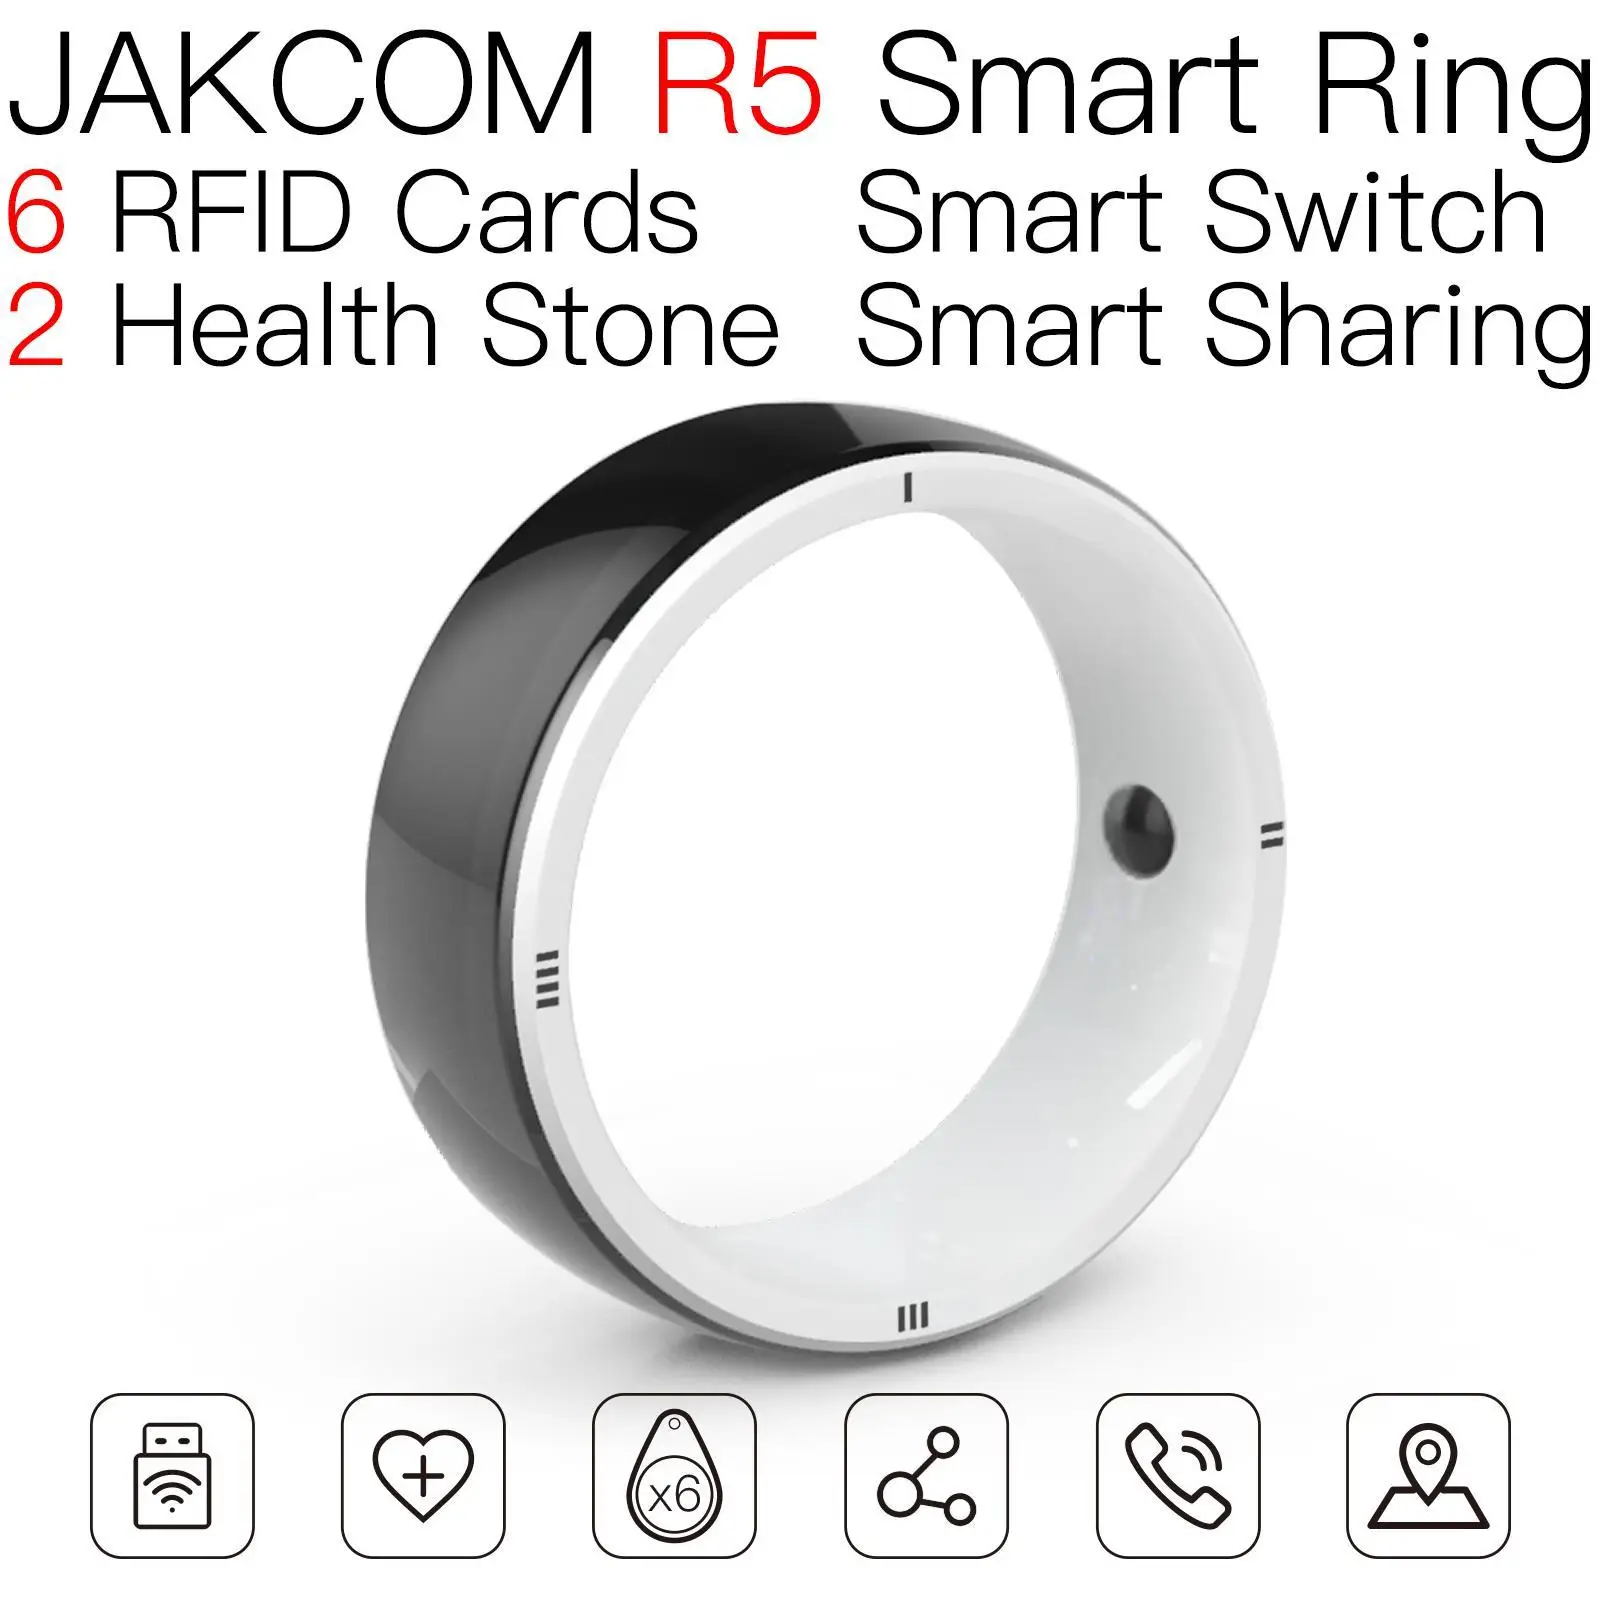 

Смарт-кольцо JAKCOM R5, лучше, чем Смарт ТВ-карта, rfid-принтер для этикеток, супер переключатель, amibo flipper zero, электронный микрочип для собак